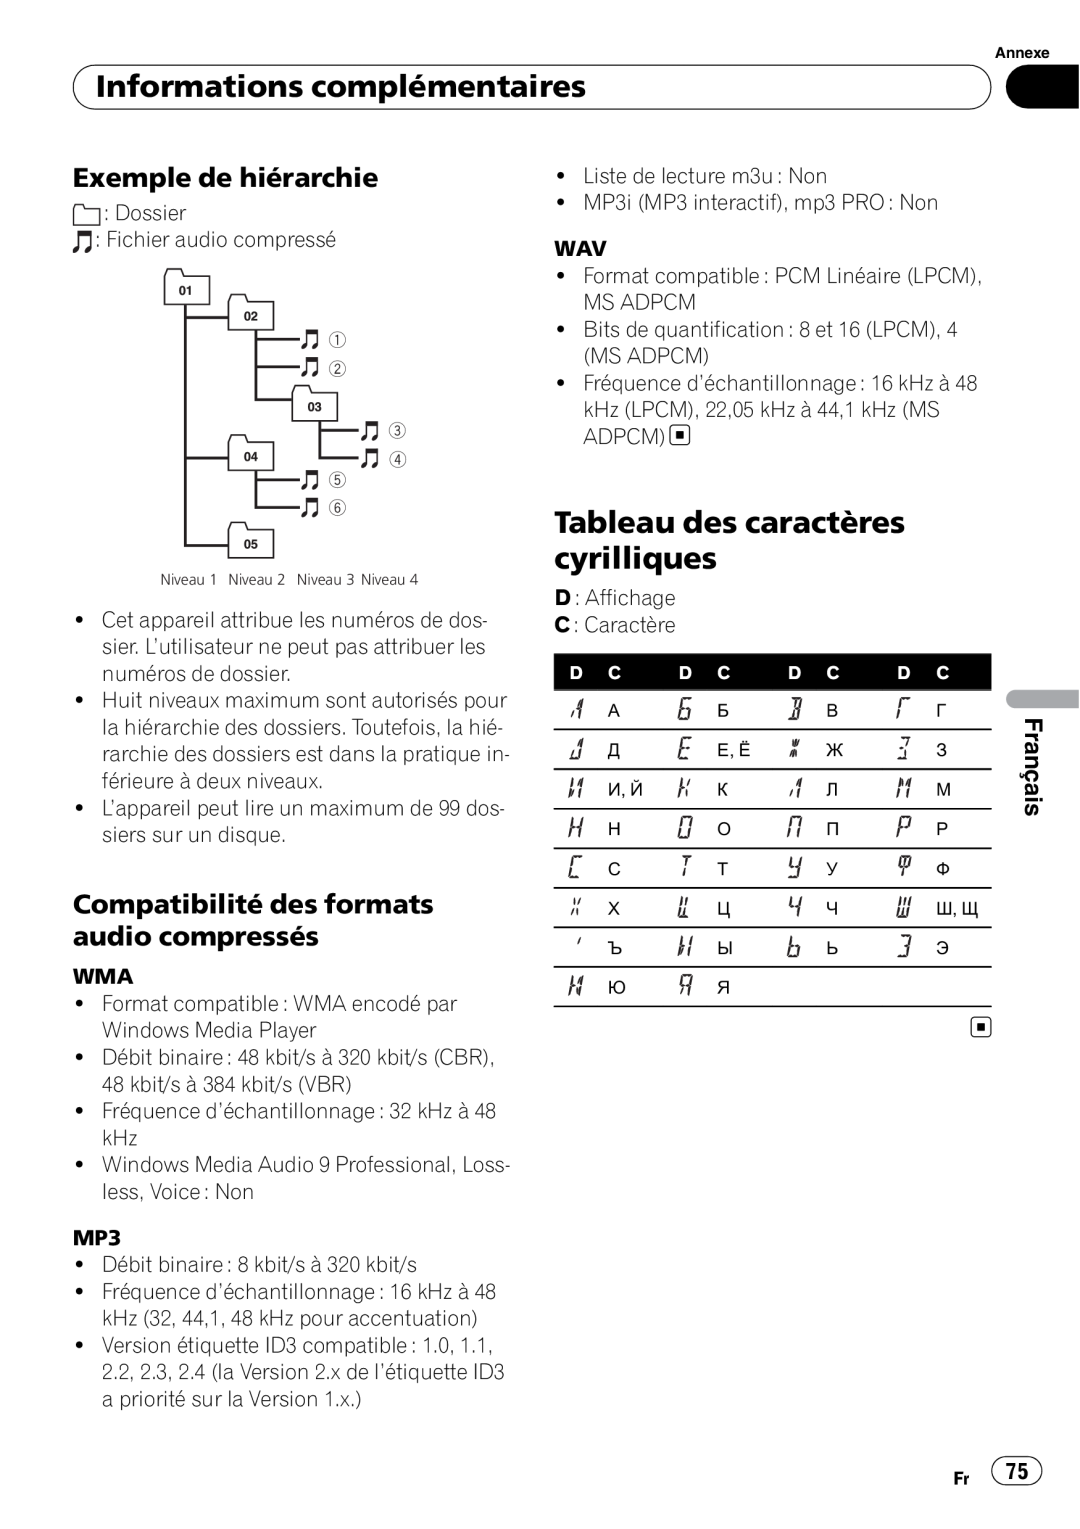 Pioneer DEH-3000MP Tableau des caractères cyrilliques, Exemple de hiérarchie, Compatibilité des formats audio compressés 